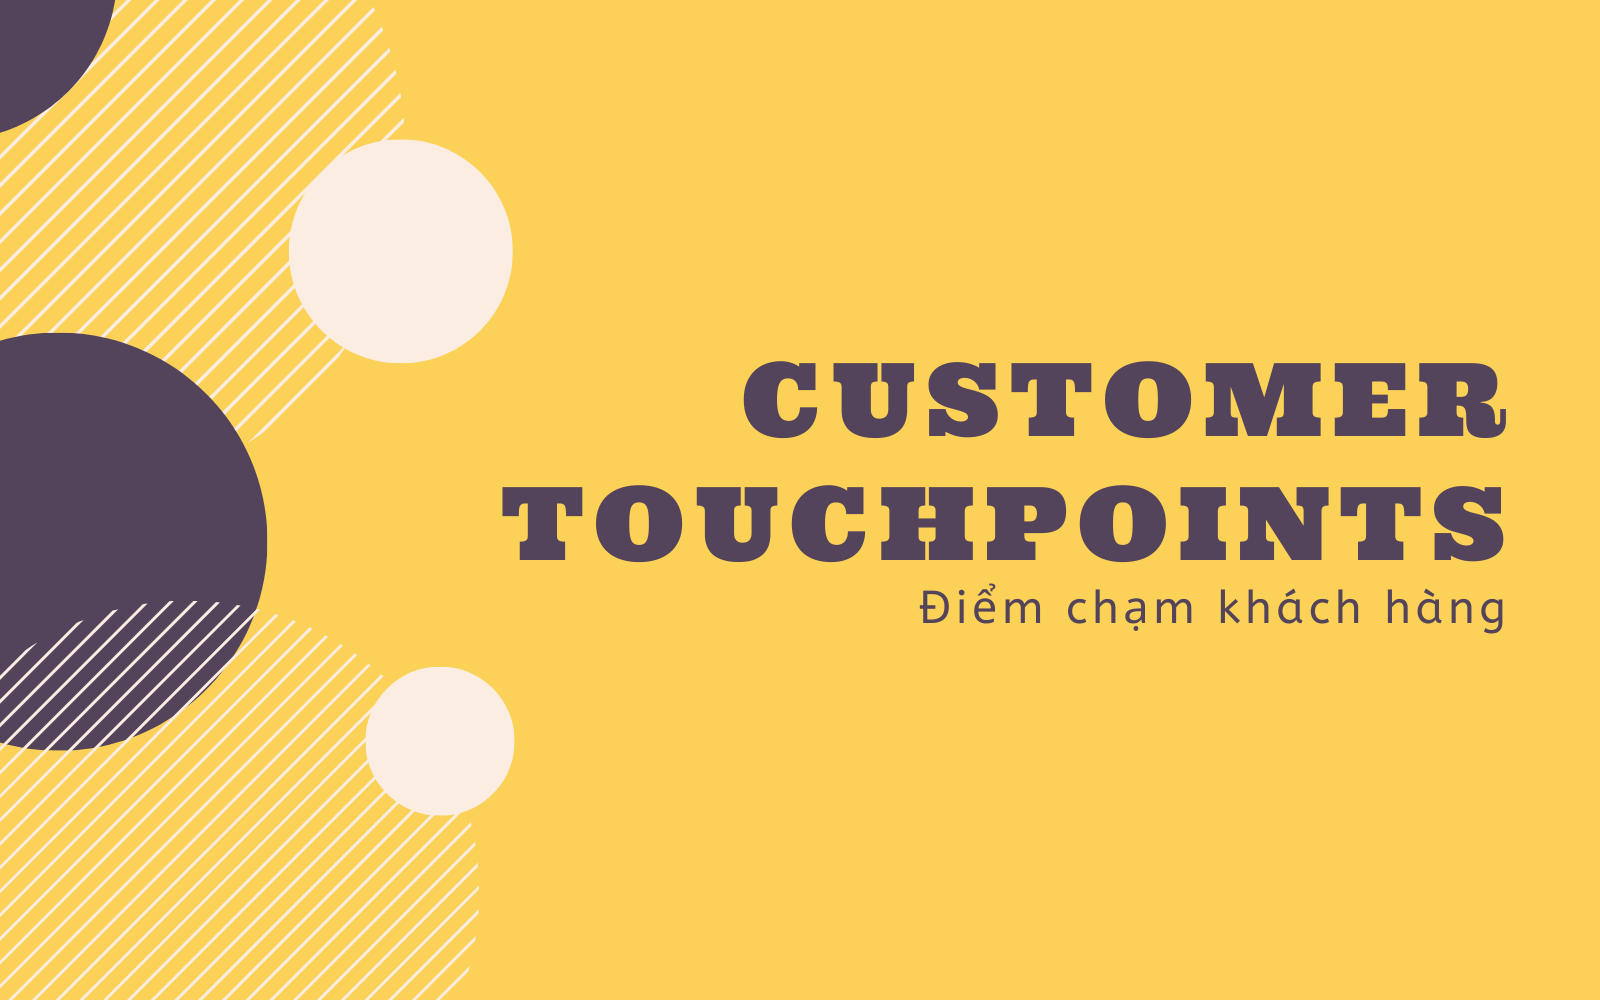 Xây dựng thương hiệu, đẩy mạnh doanh thu bằng Customer Touch Points